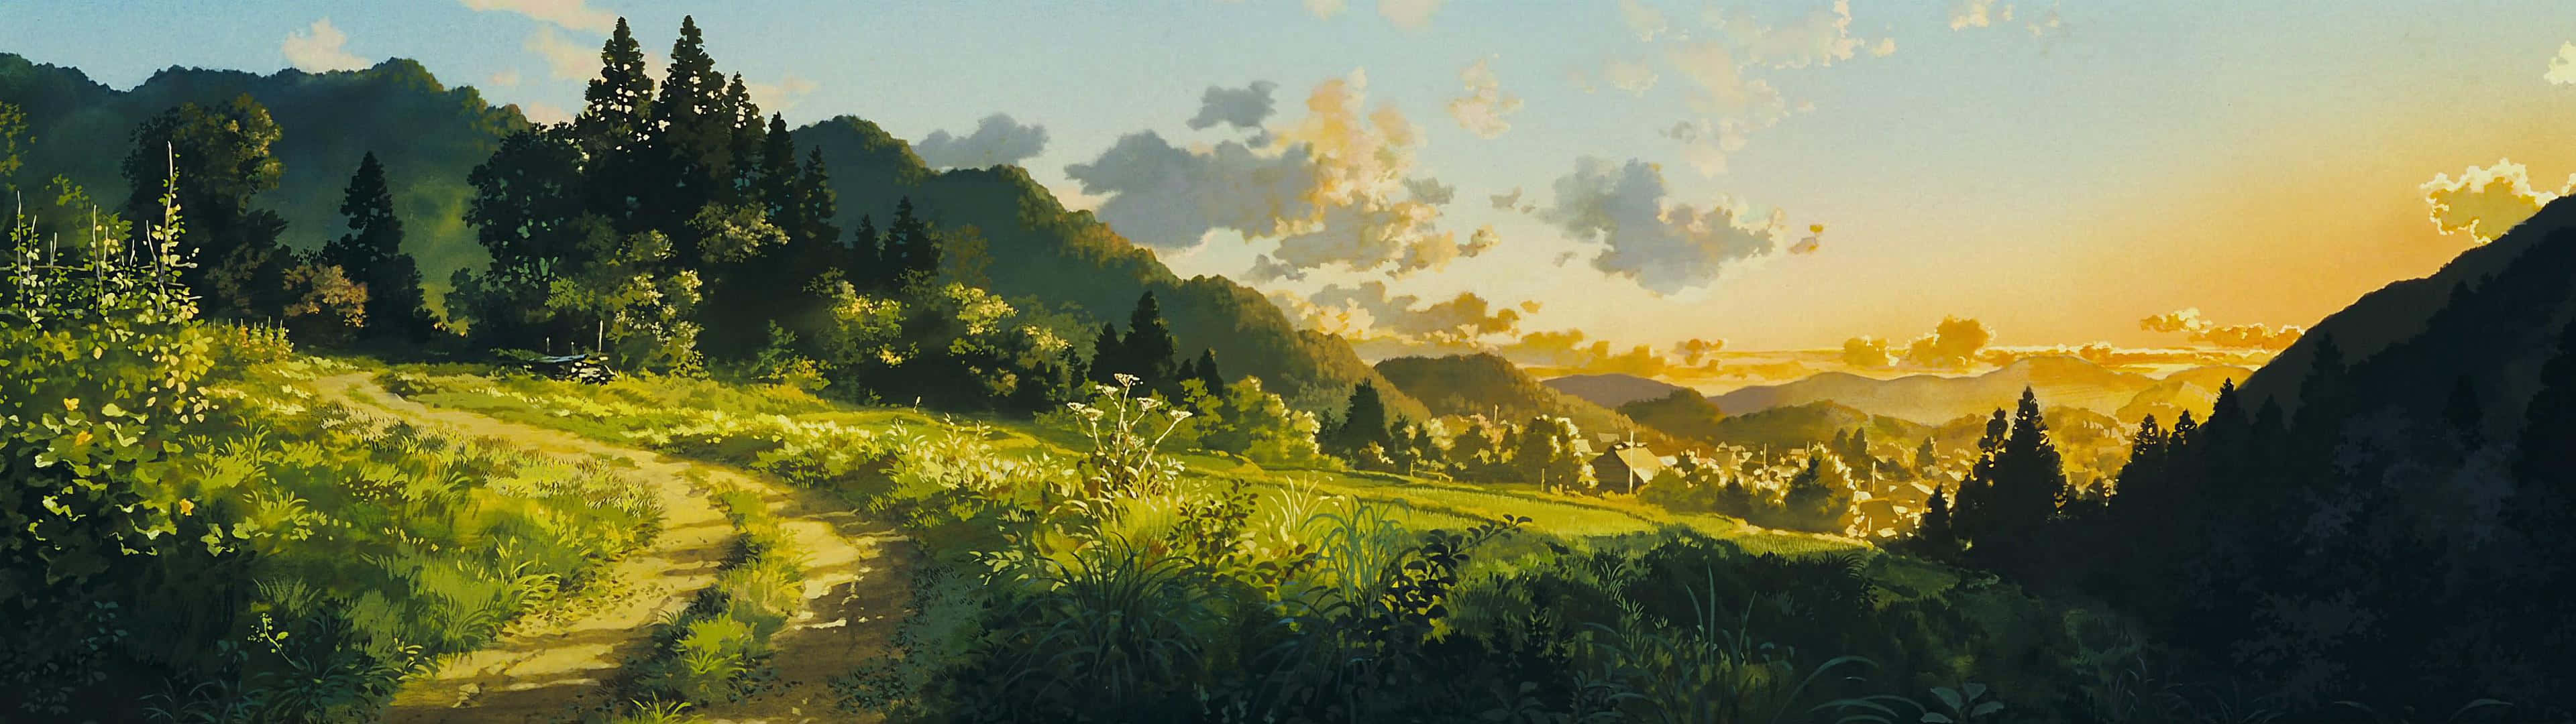 Sóloayer De Studio Ghibli: Un Viaje De Autodescubrimiento. Fondo de pantalla